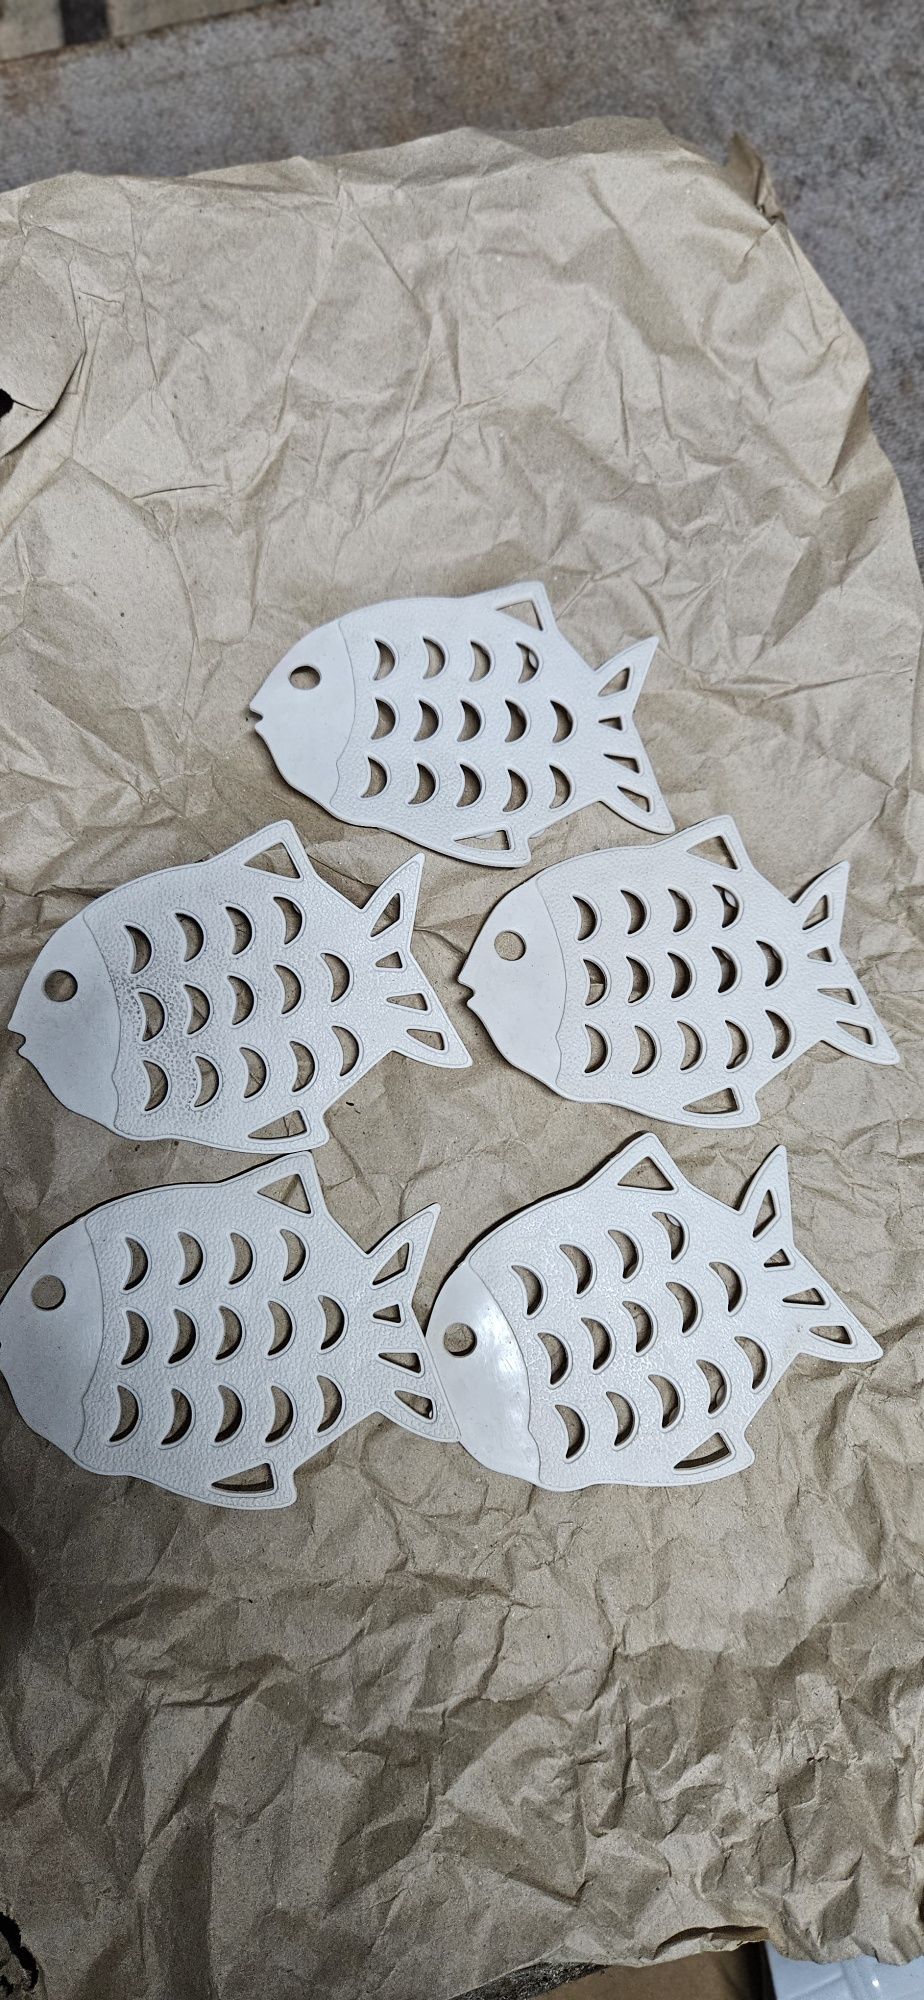 Podkładki w kształcie ryby